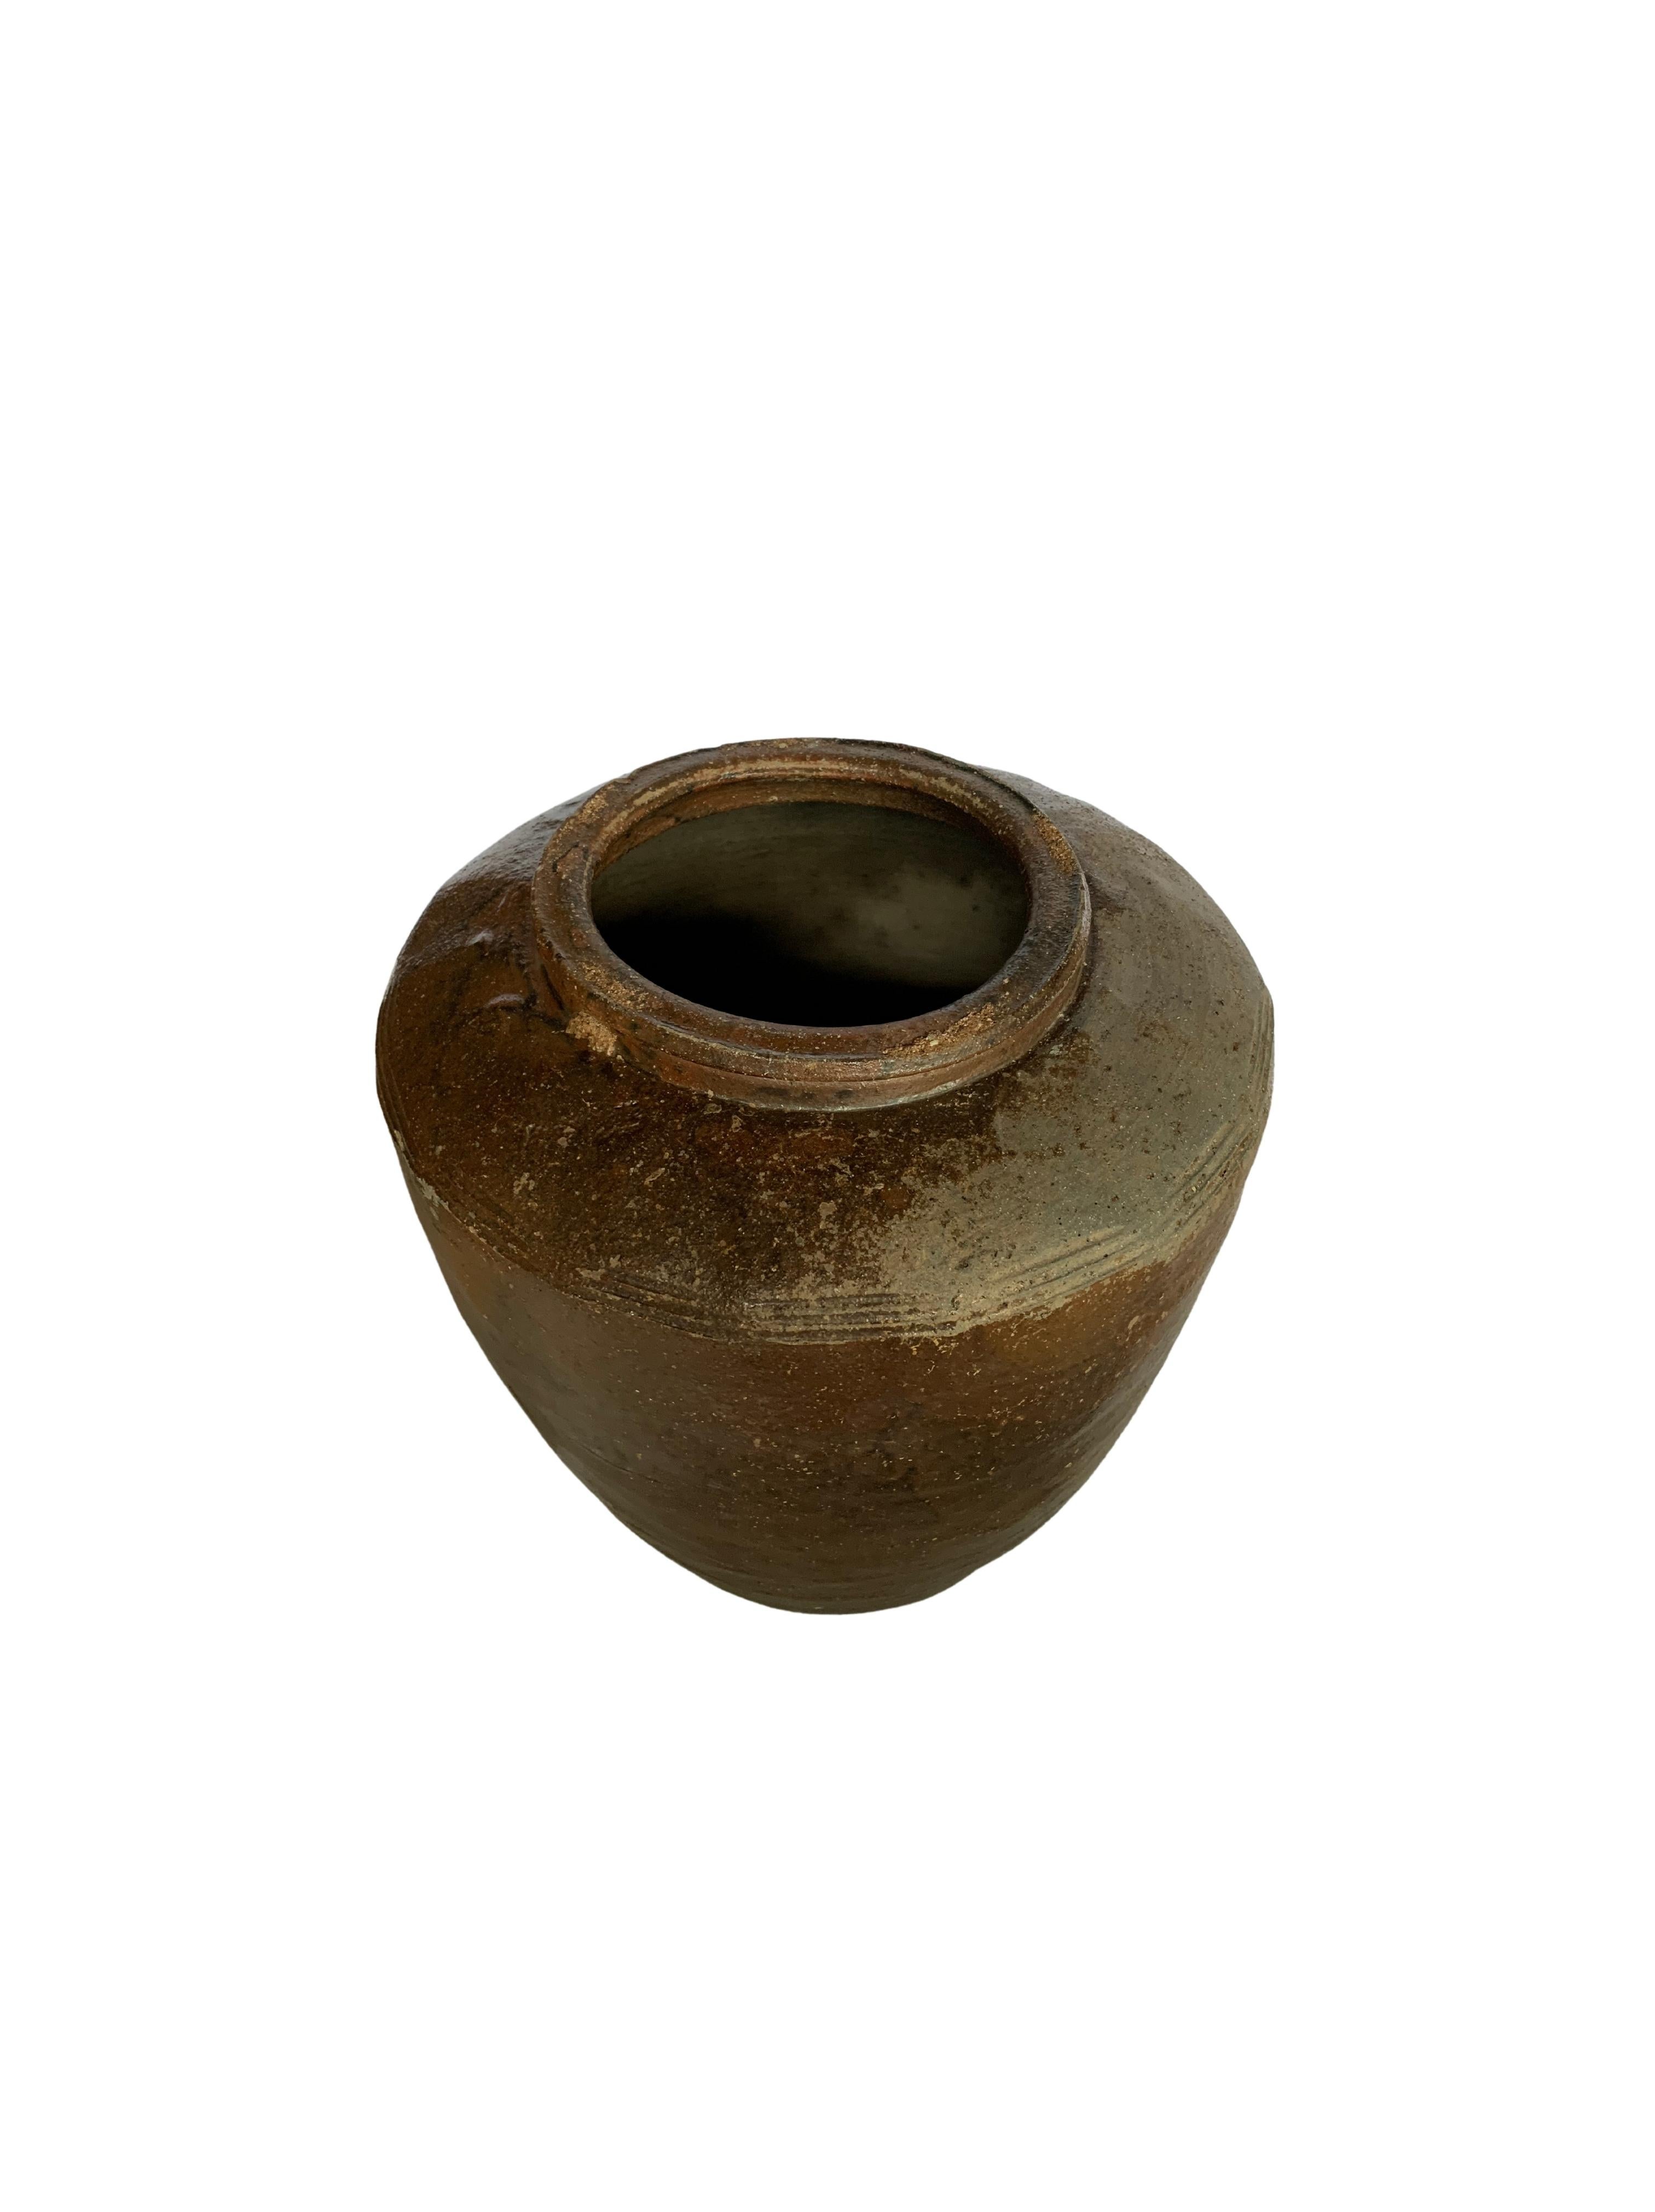 Antique Chinese Brown & Black Glazed Ceramic Salty Egg Jar, c. 1900 For Sale 1